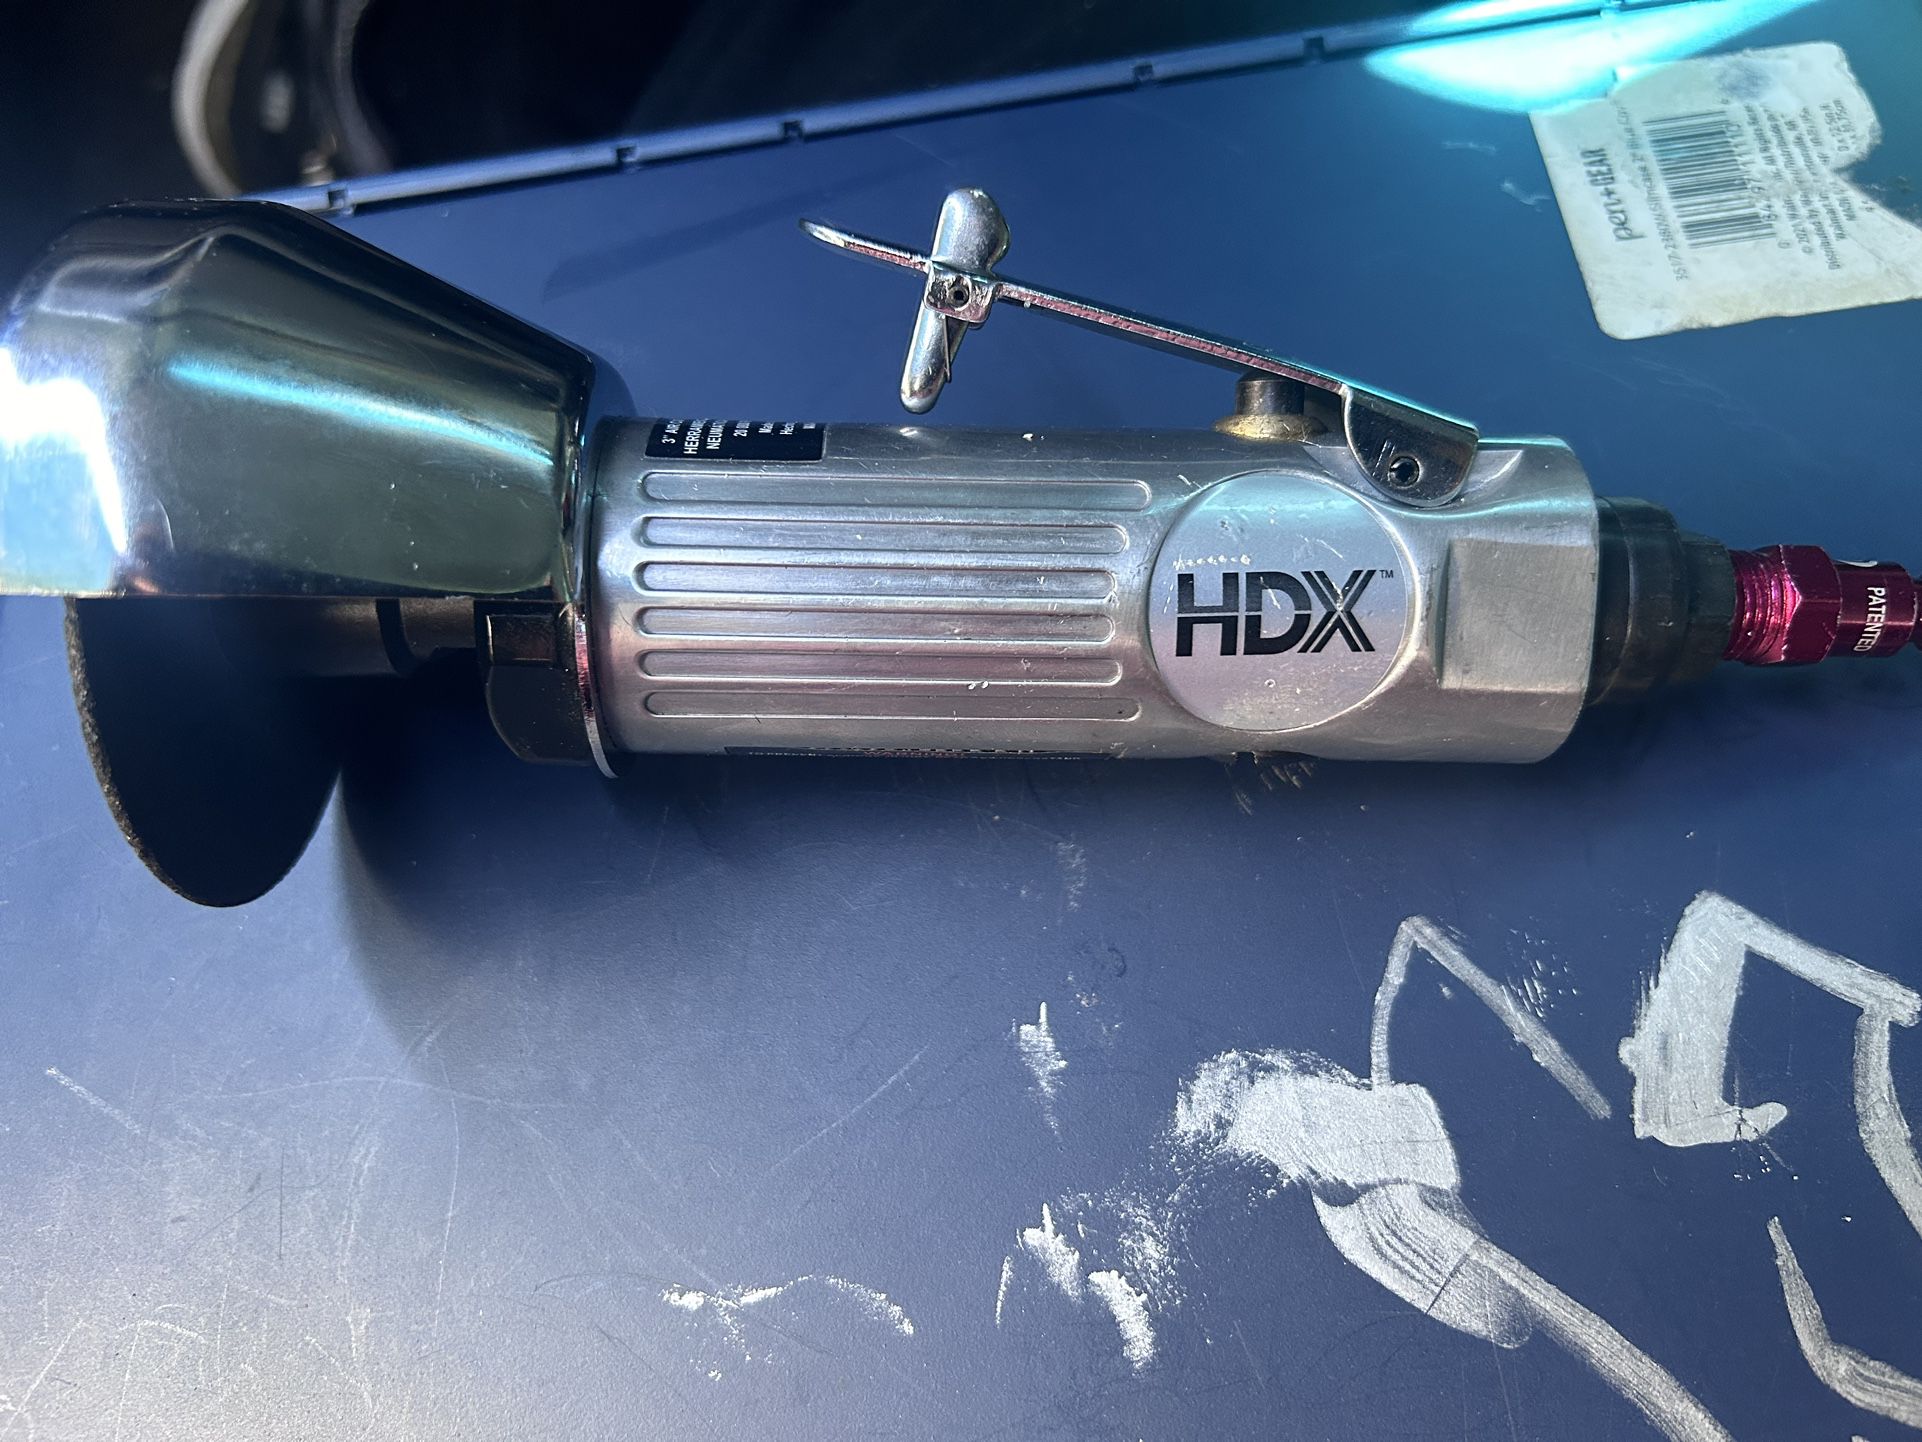 HDX 3” Cut Off Tool